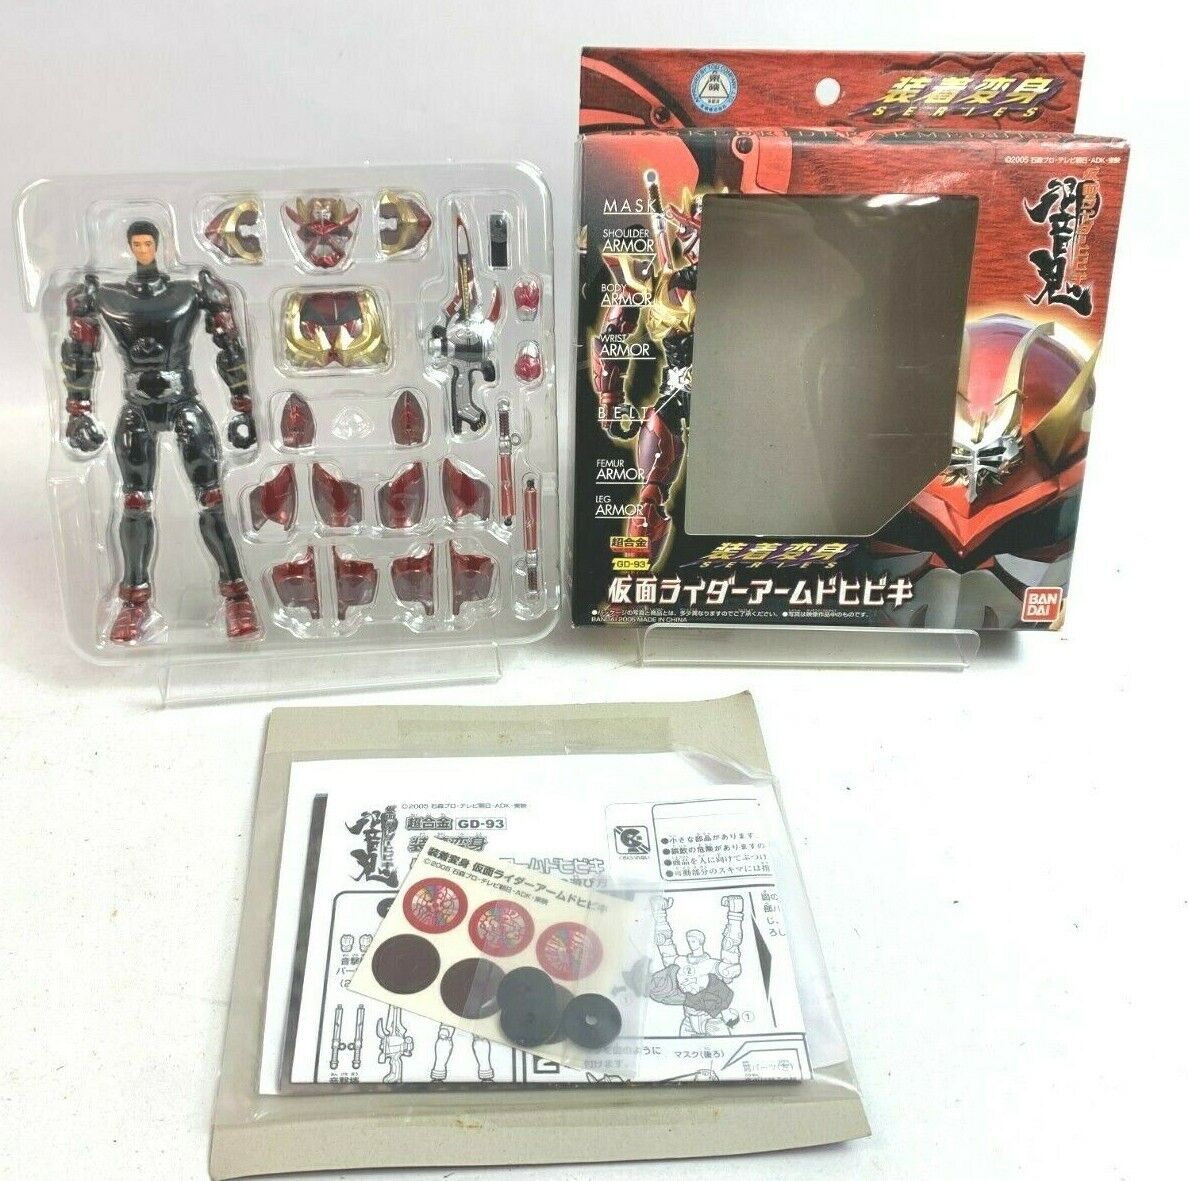 BANDAI Kamen Rider Hibiki MASKED RIDER MED HIBIKI GD-93 Japan fedex